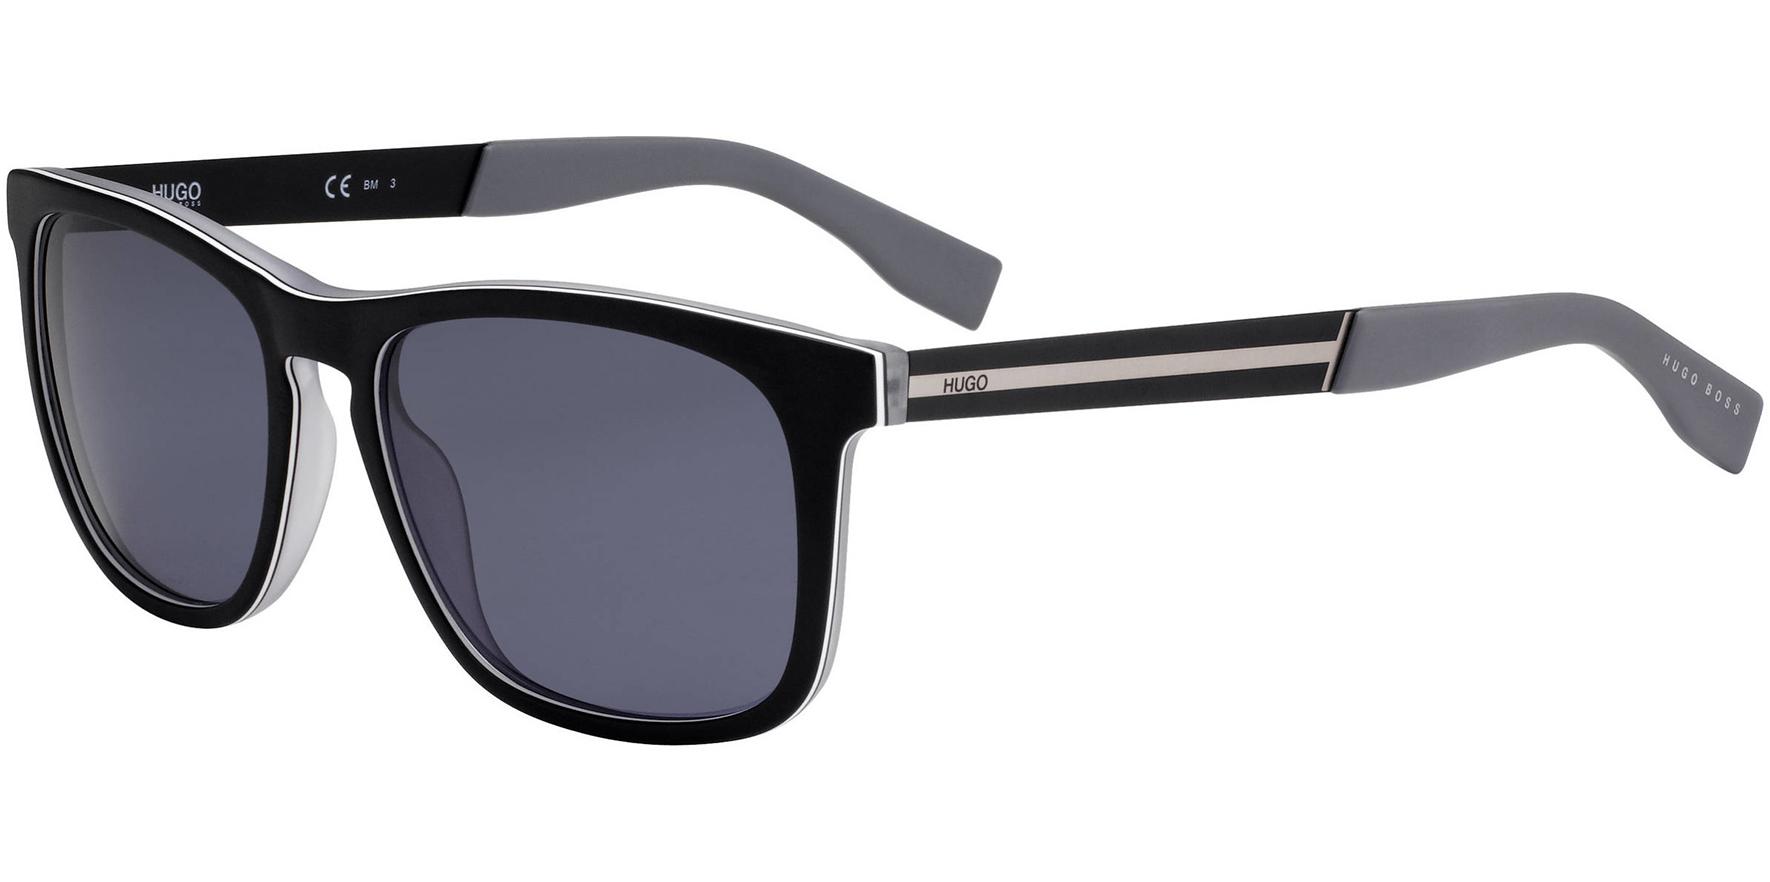 Hugo Boss Sunglasses for $34 Shipped